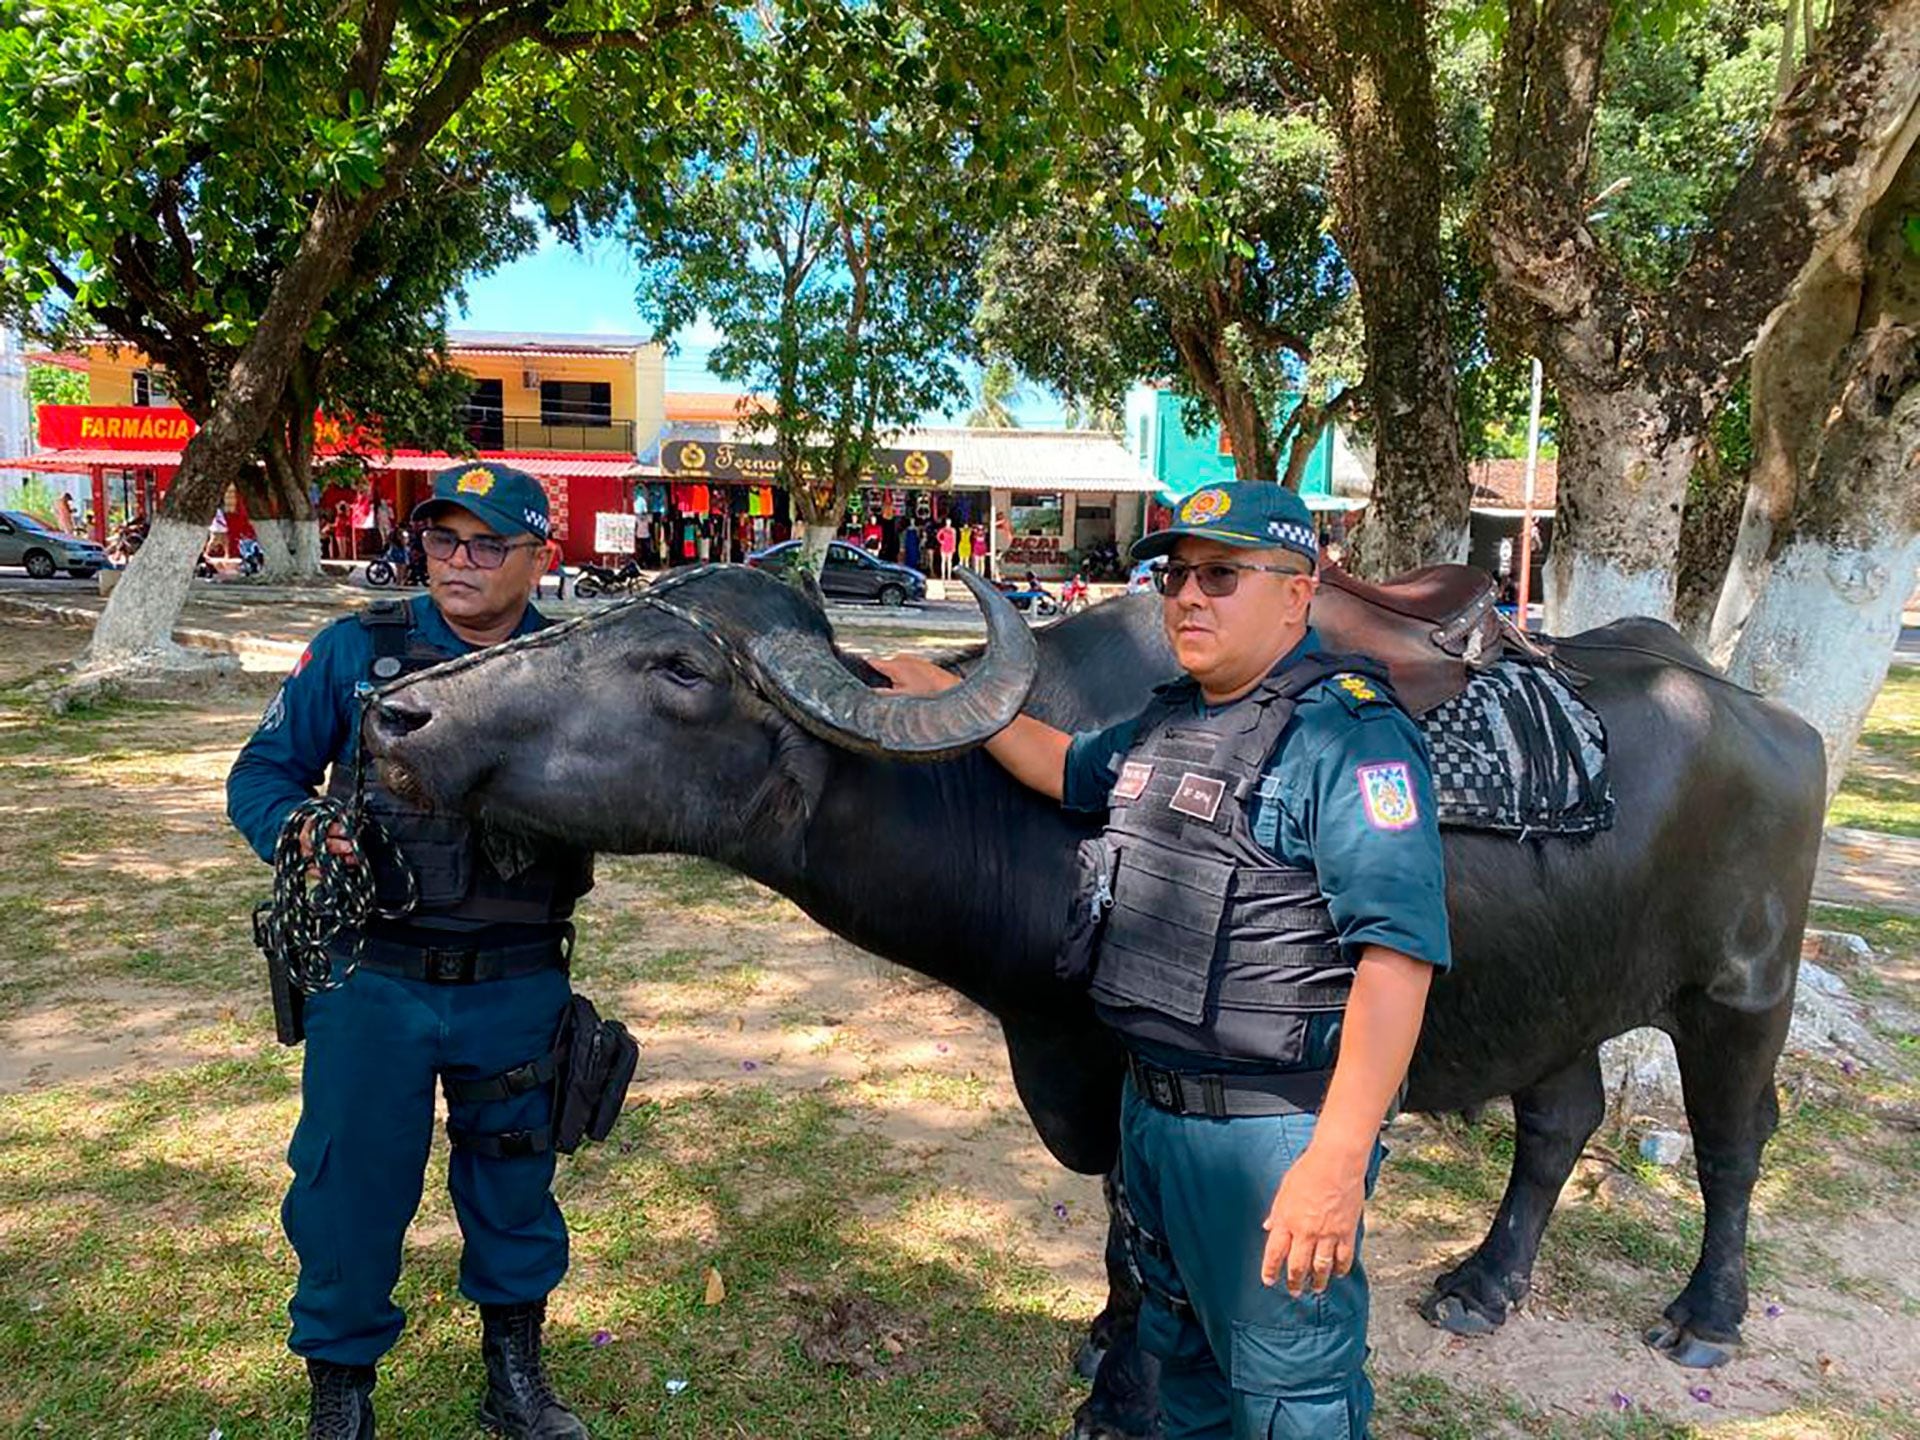 La policía de la isla de Marajó en el estado de Pará, usa búfalos como medios de transporte. Foto: Marcos Colombo